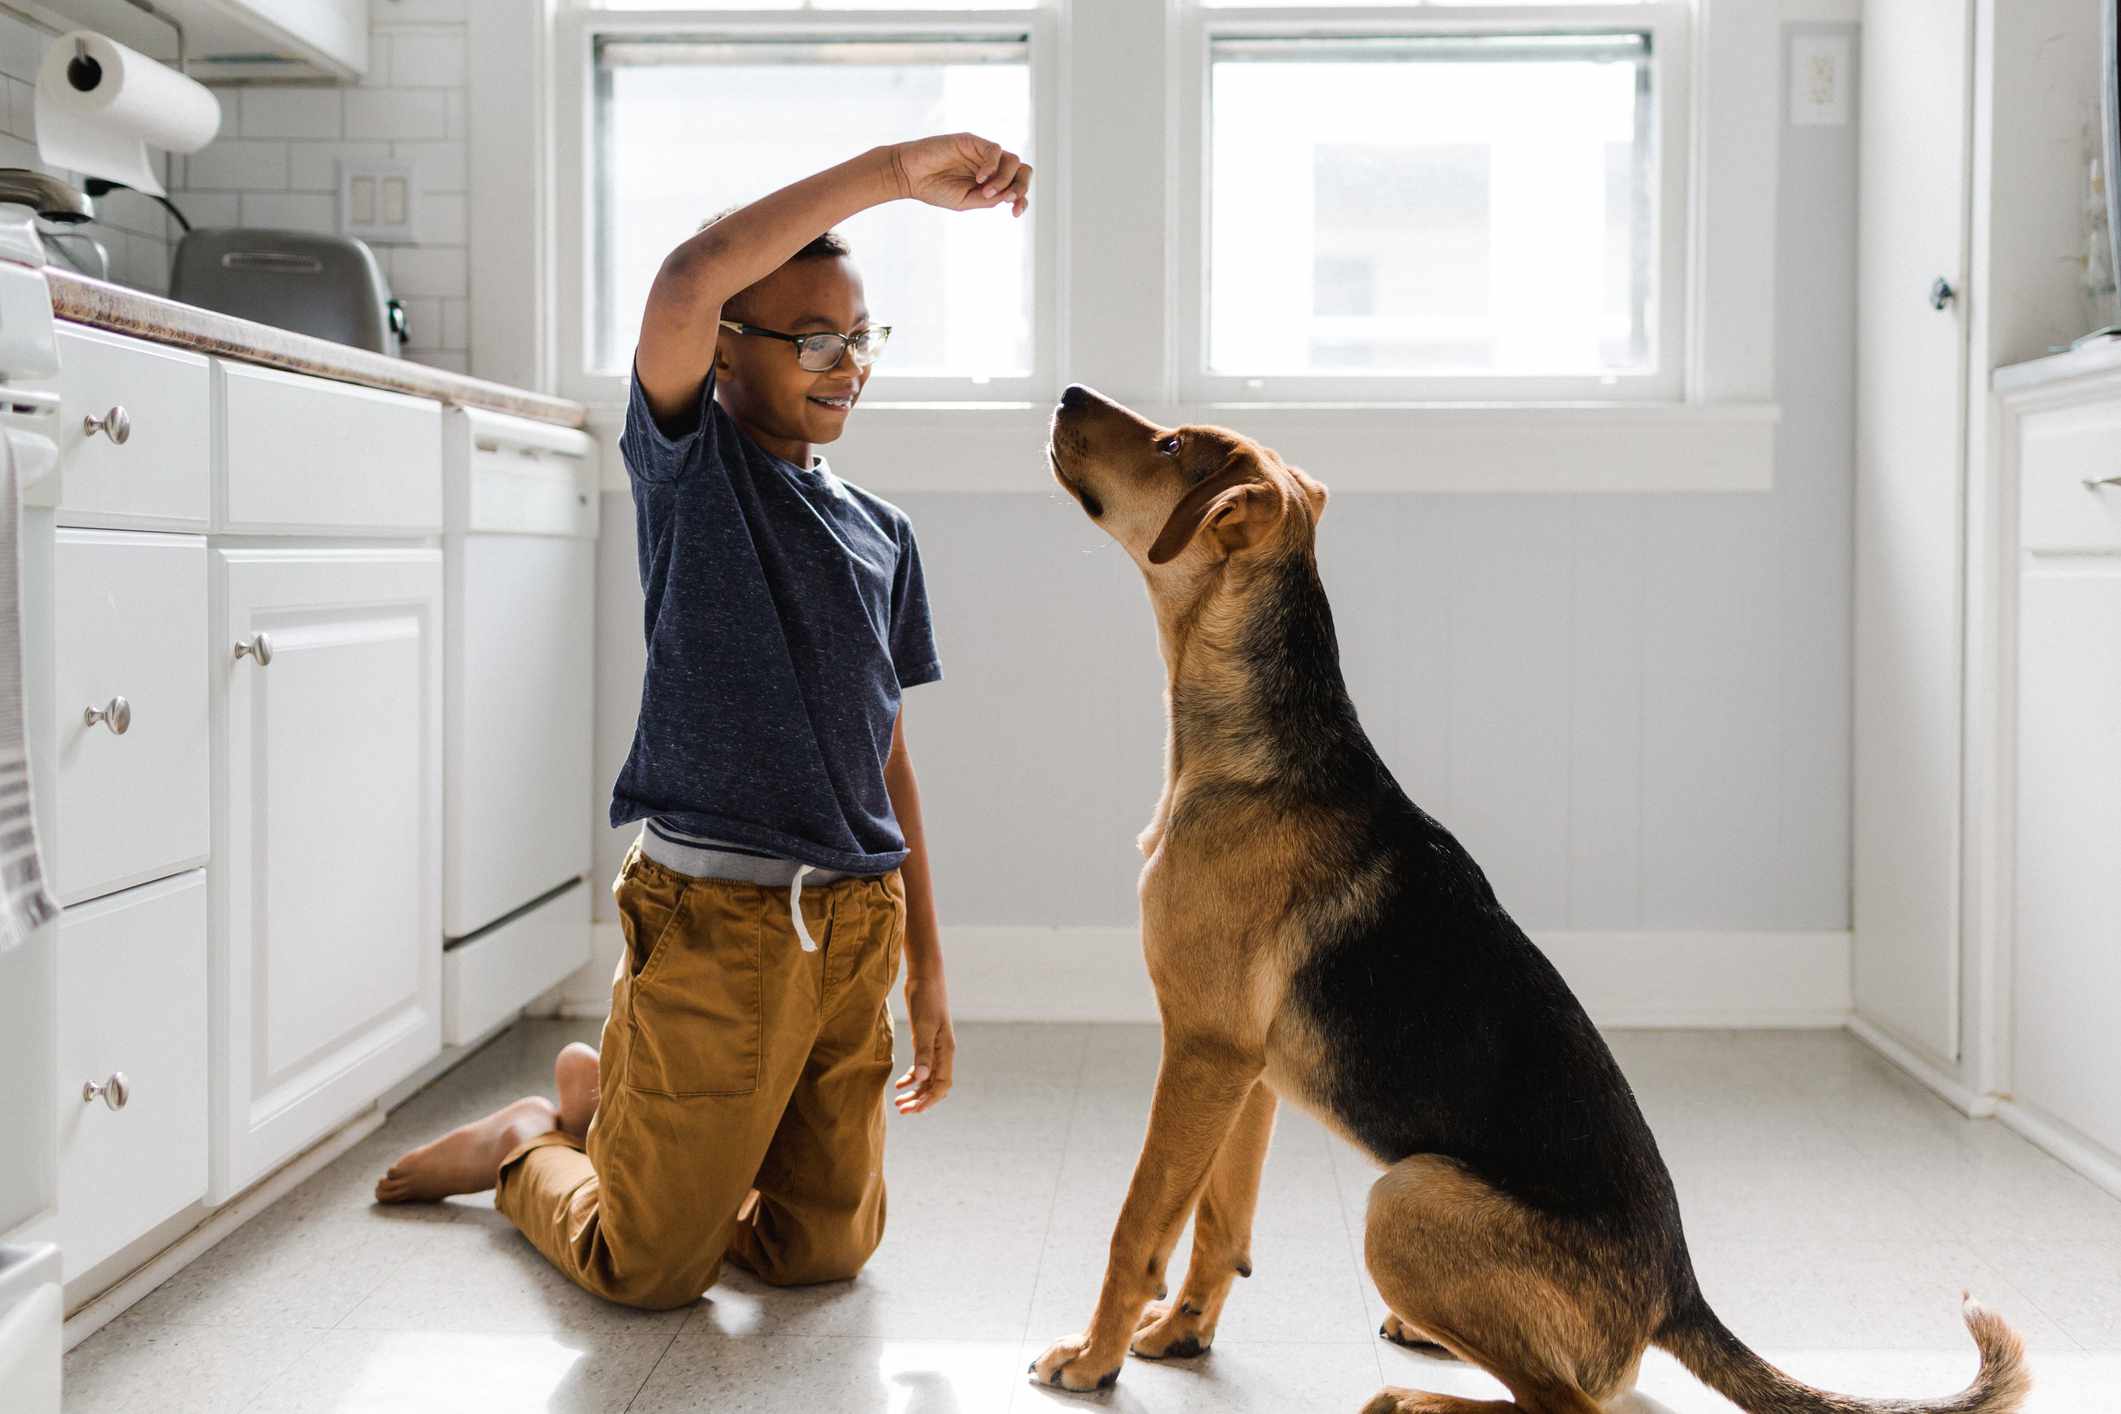 Chlapec se svým psem pracuje na tréninku s pamlskem v jasně osvětlené kuchyni